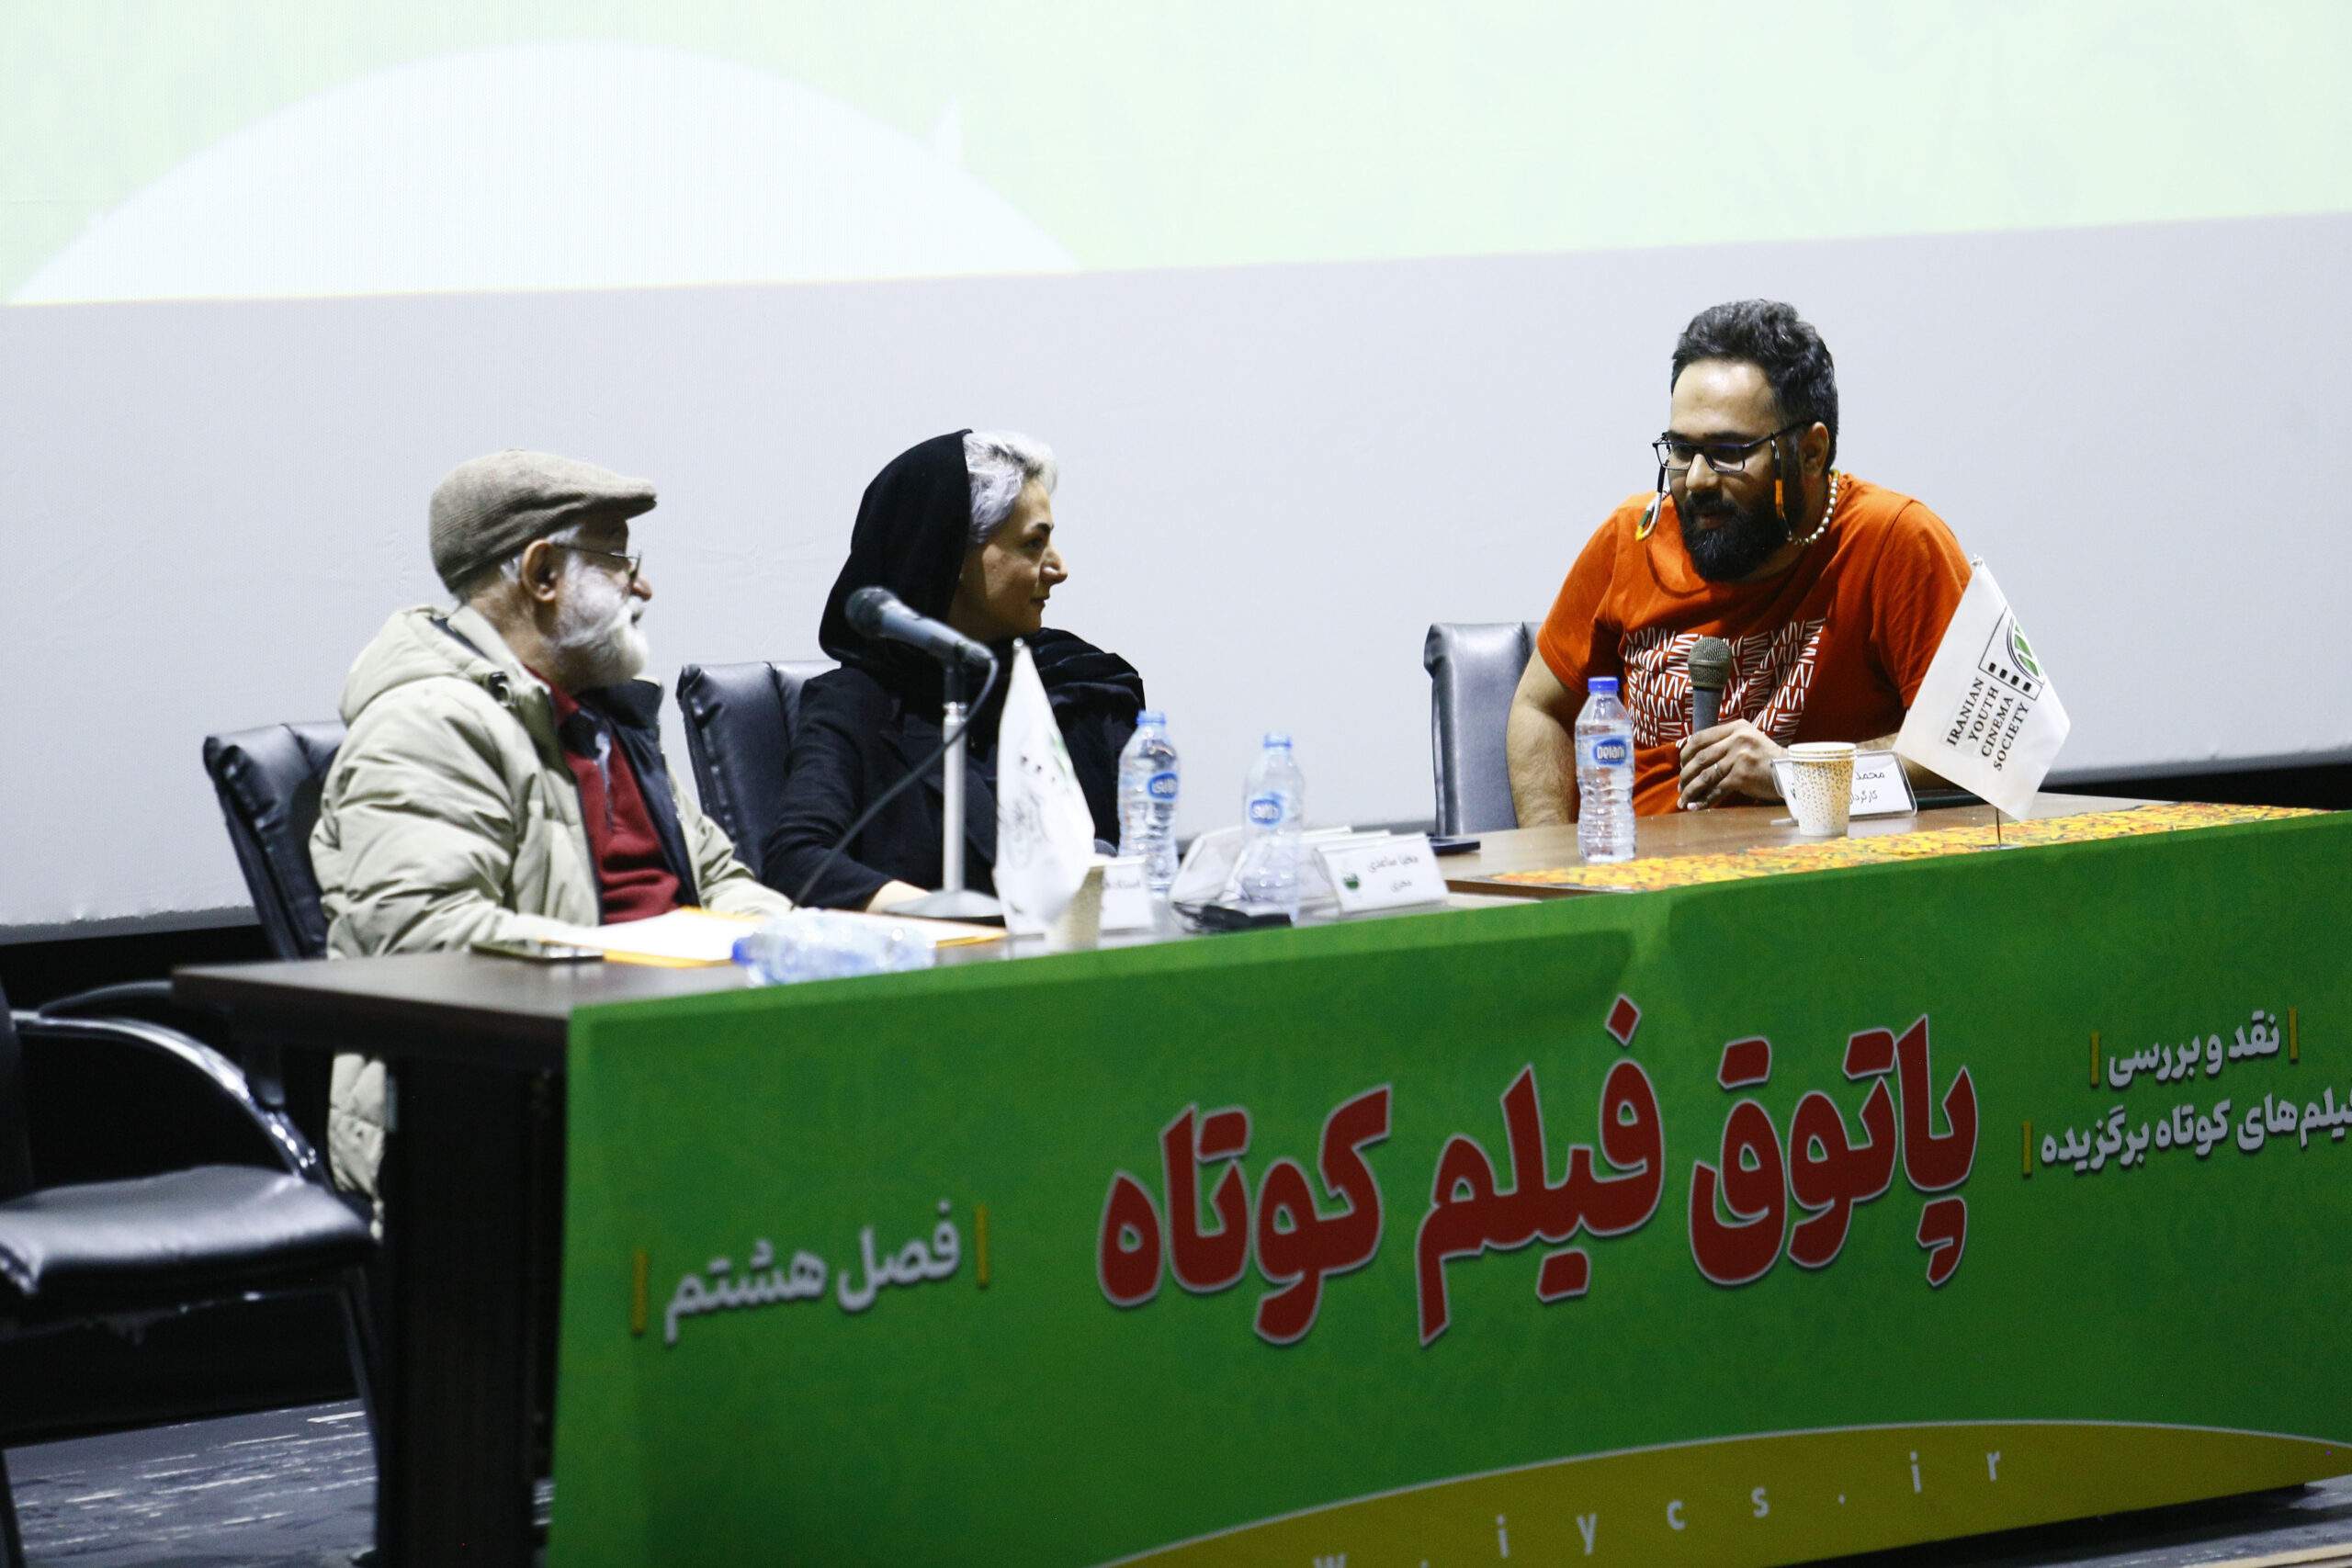 اولین جلسه پاتوق فیلم کوتاه تهران با حضور فریدون جیرانی برگزار شد/ گزارش تصویری